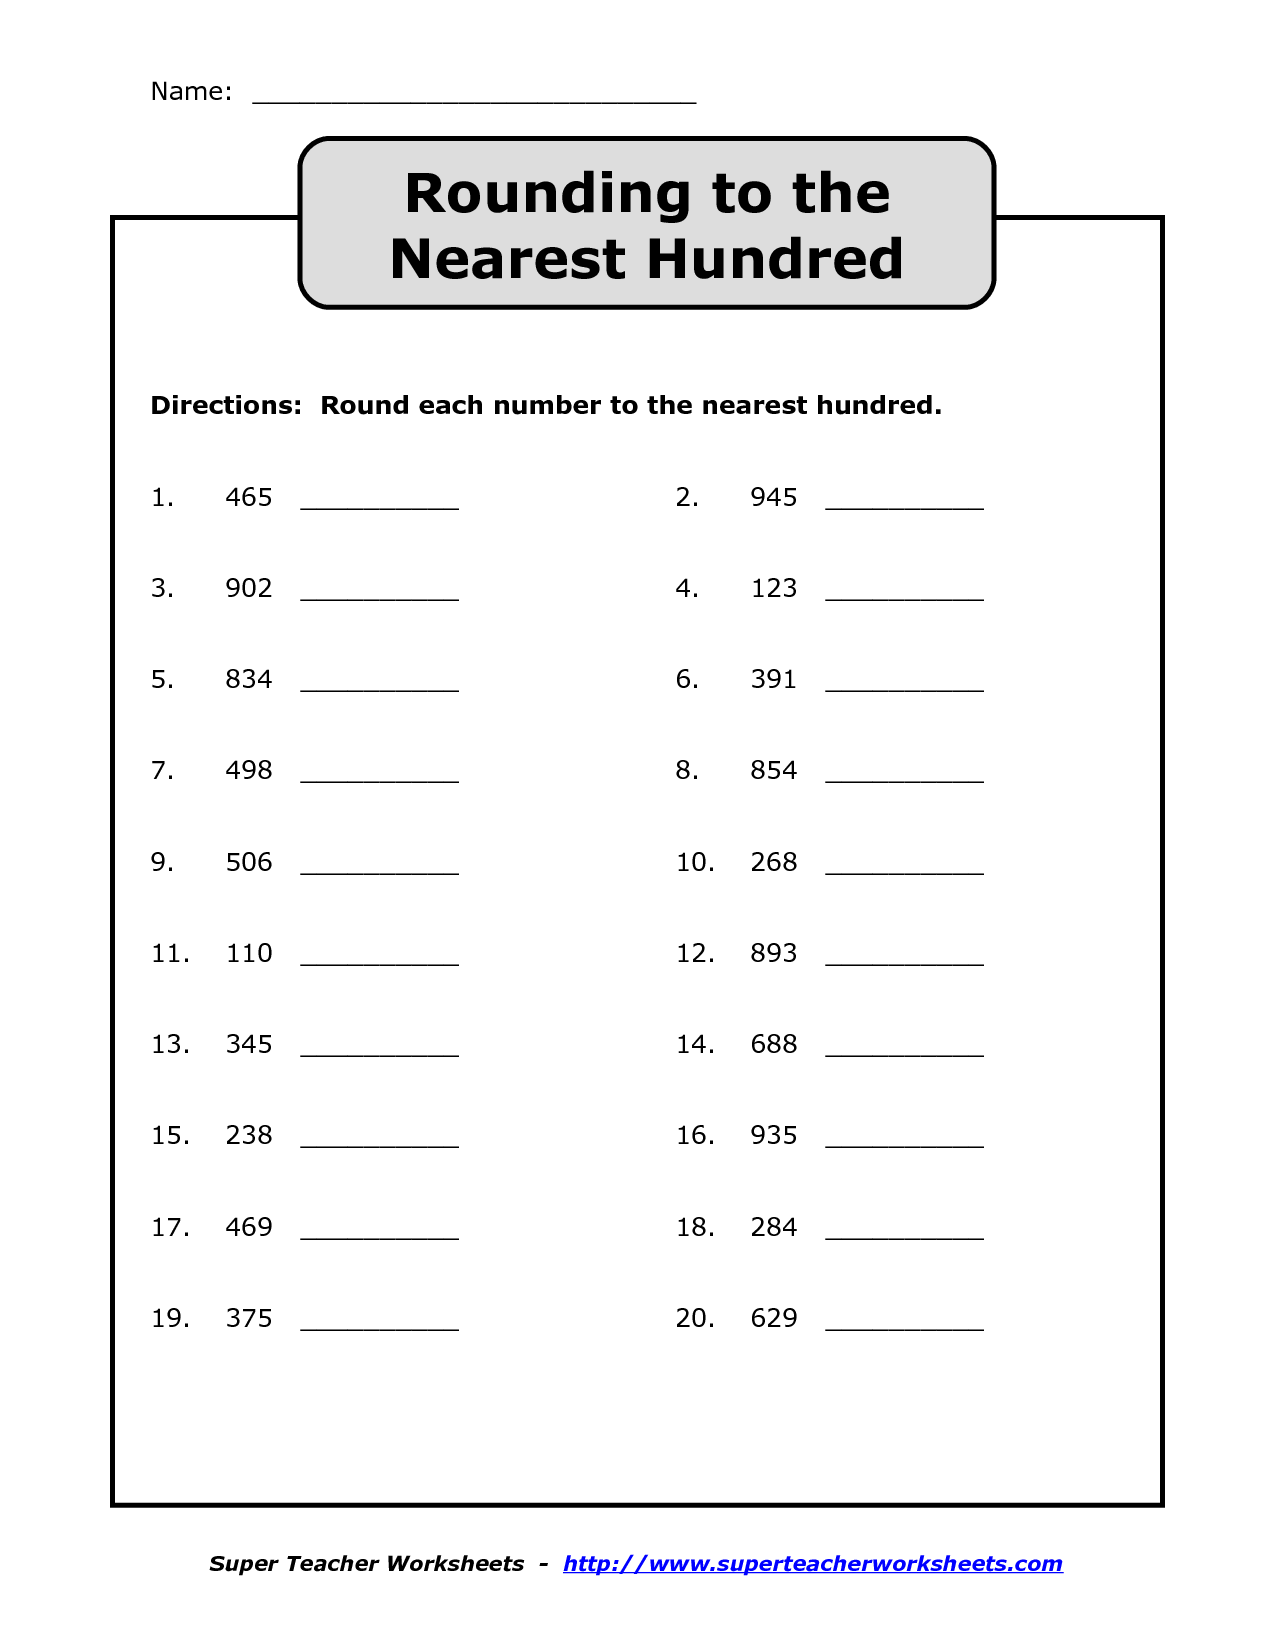 rounding-whole-numbers-worksheet-free-printable-educational-worksheet-multiplying-fractions-by